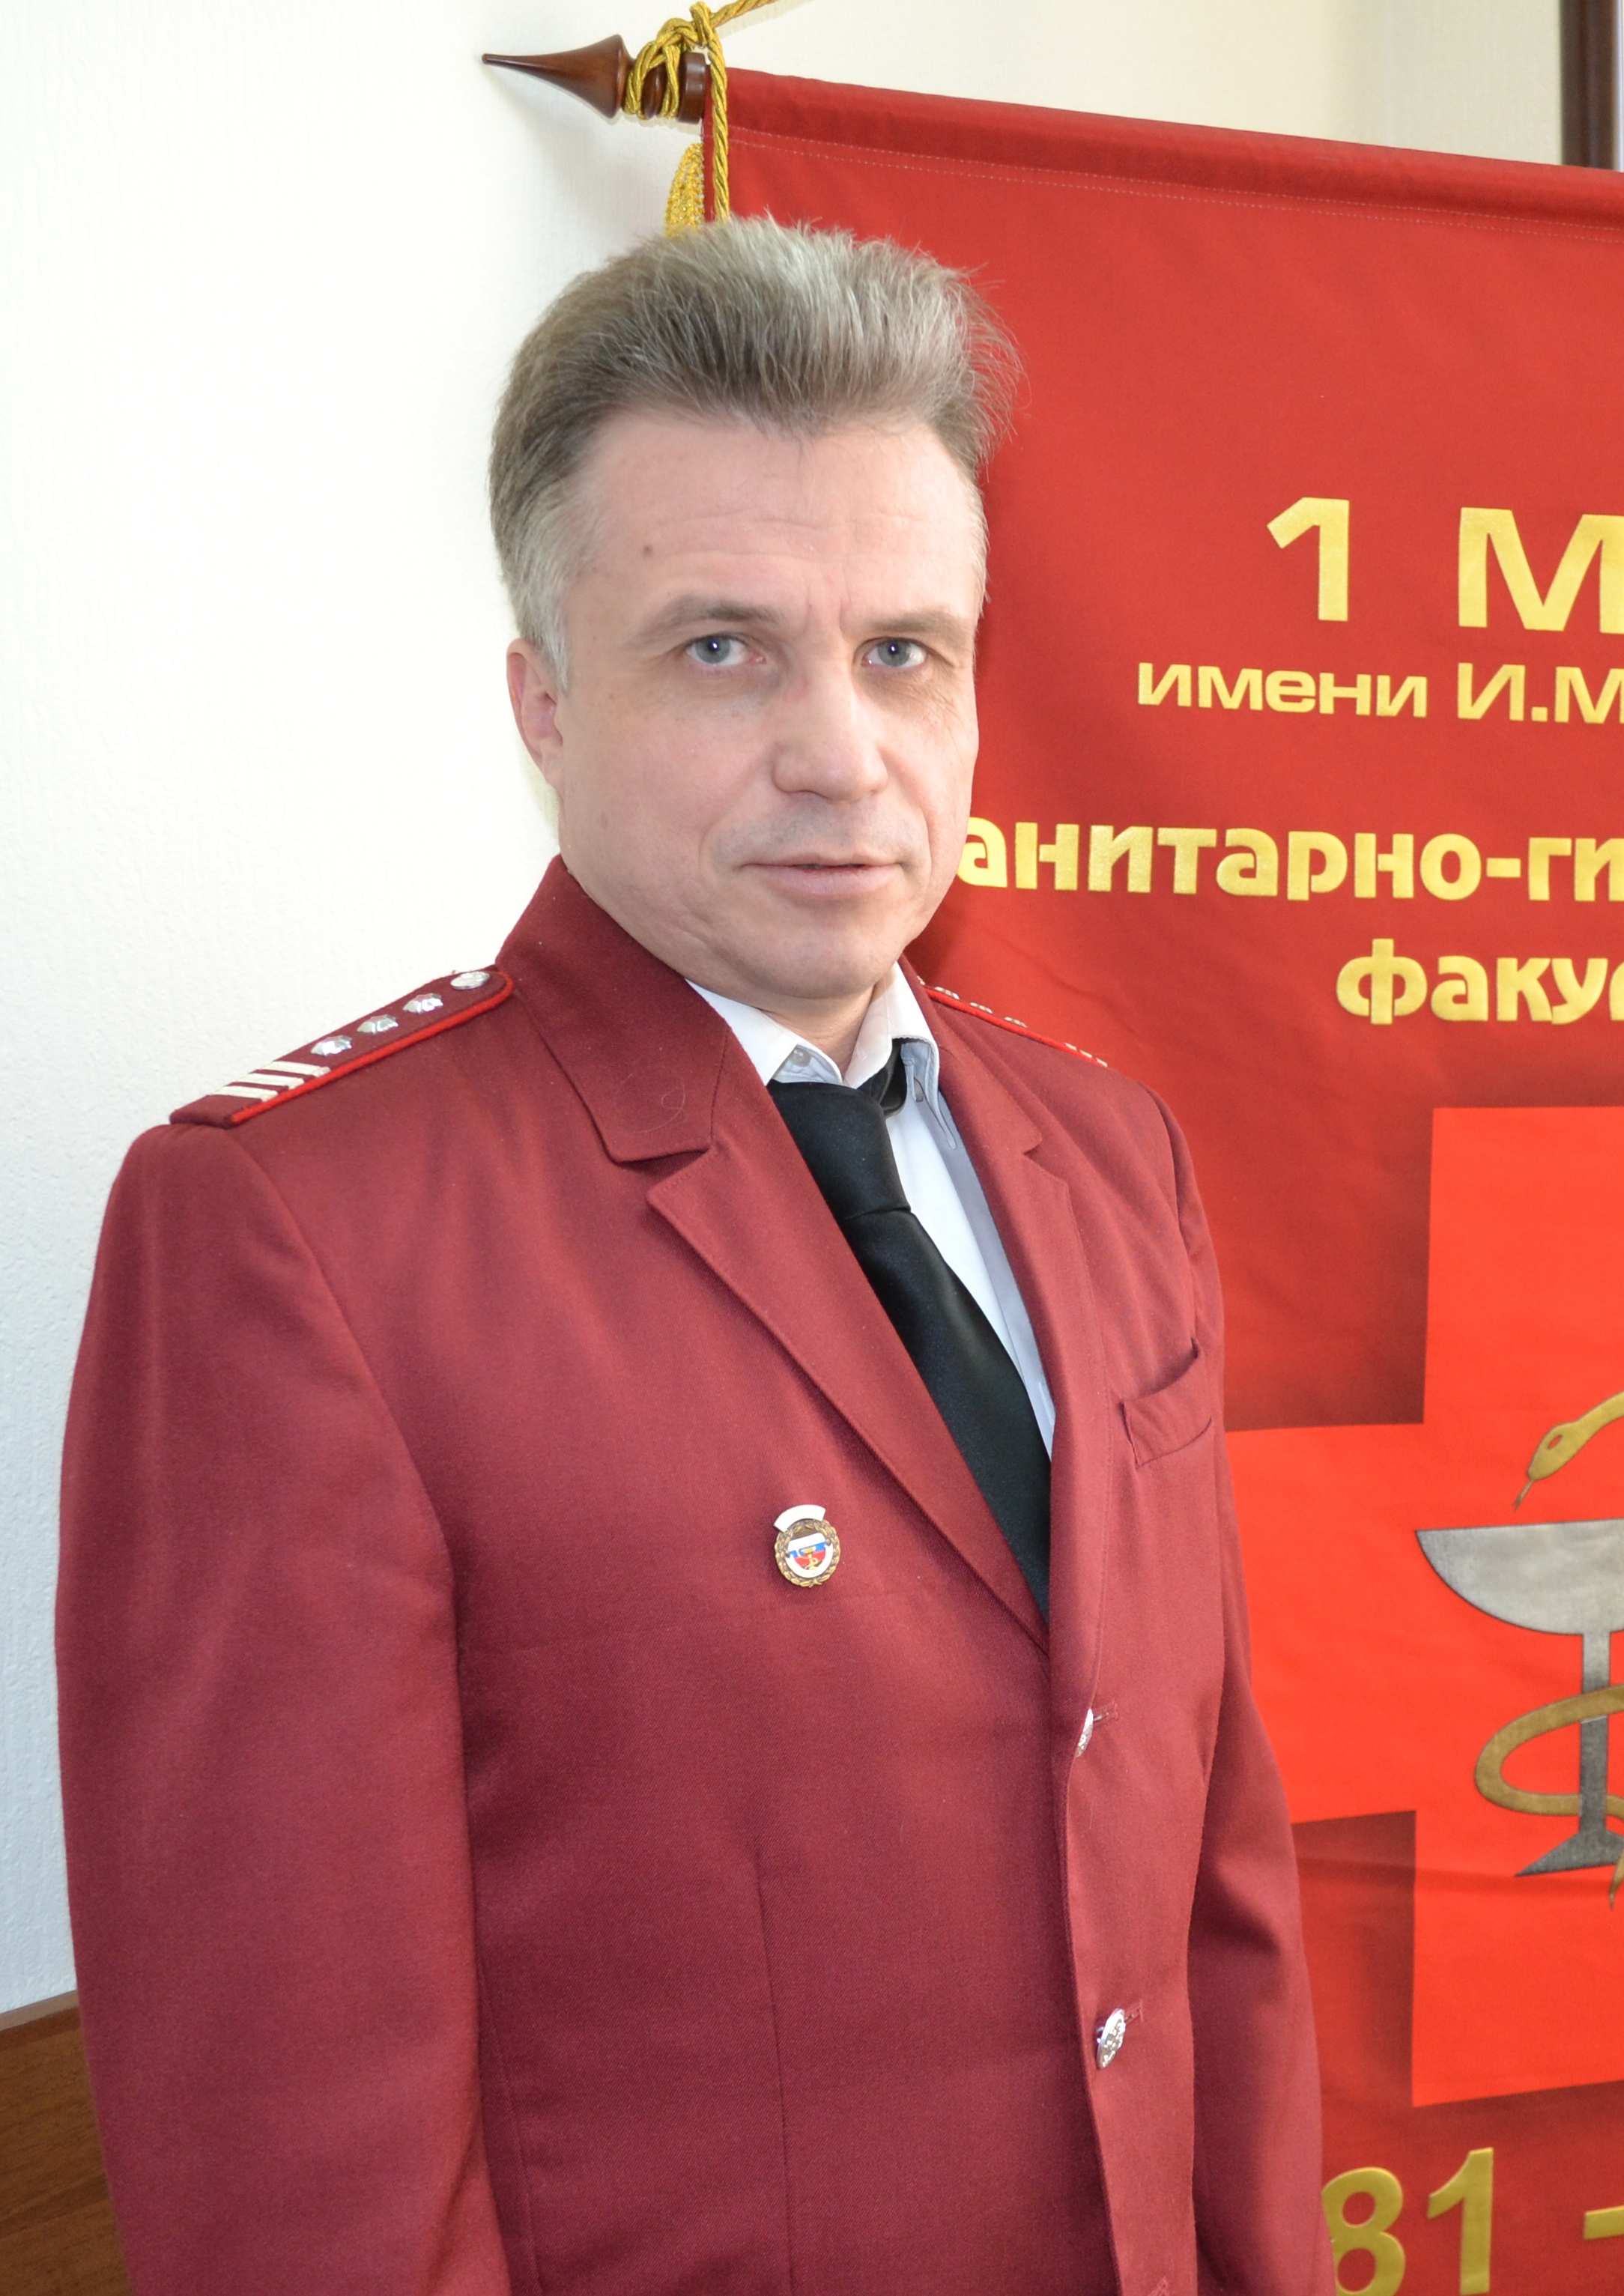 Федор Кукшин, главный санитарный врач по ТиНАО